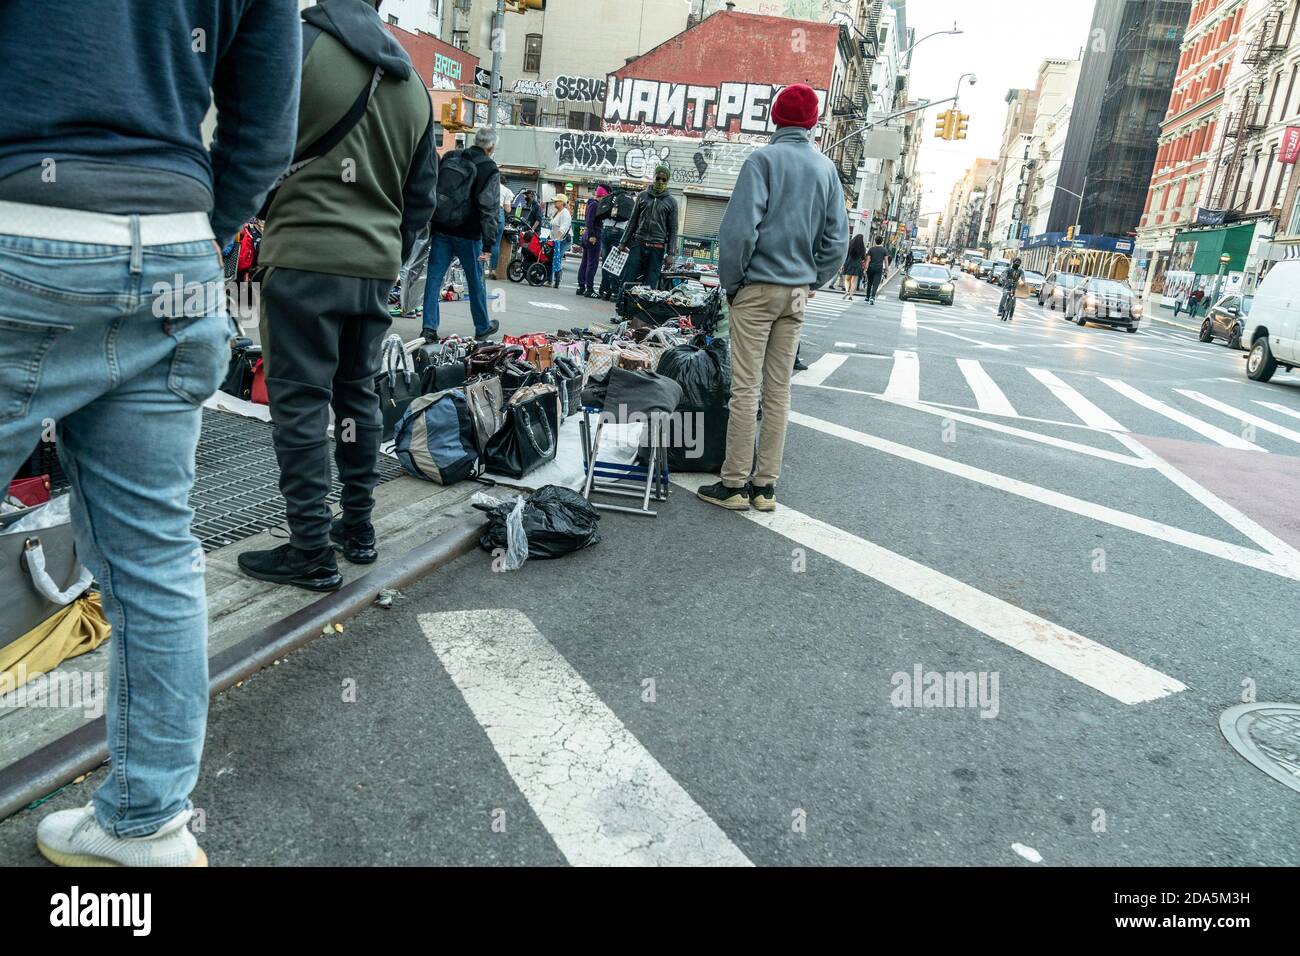 Nueva York, NY - 9 de noviembre de 2020: Vendedores ambulantes venden artículos falsificados como bolsas, gafas de sol, cinturones y relojes en Canal Street y Broadway corners Foto de stock